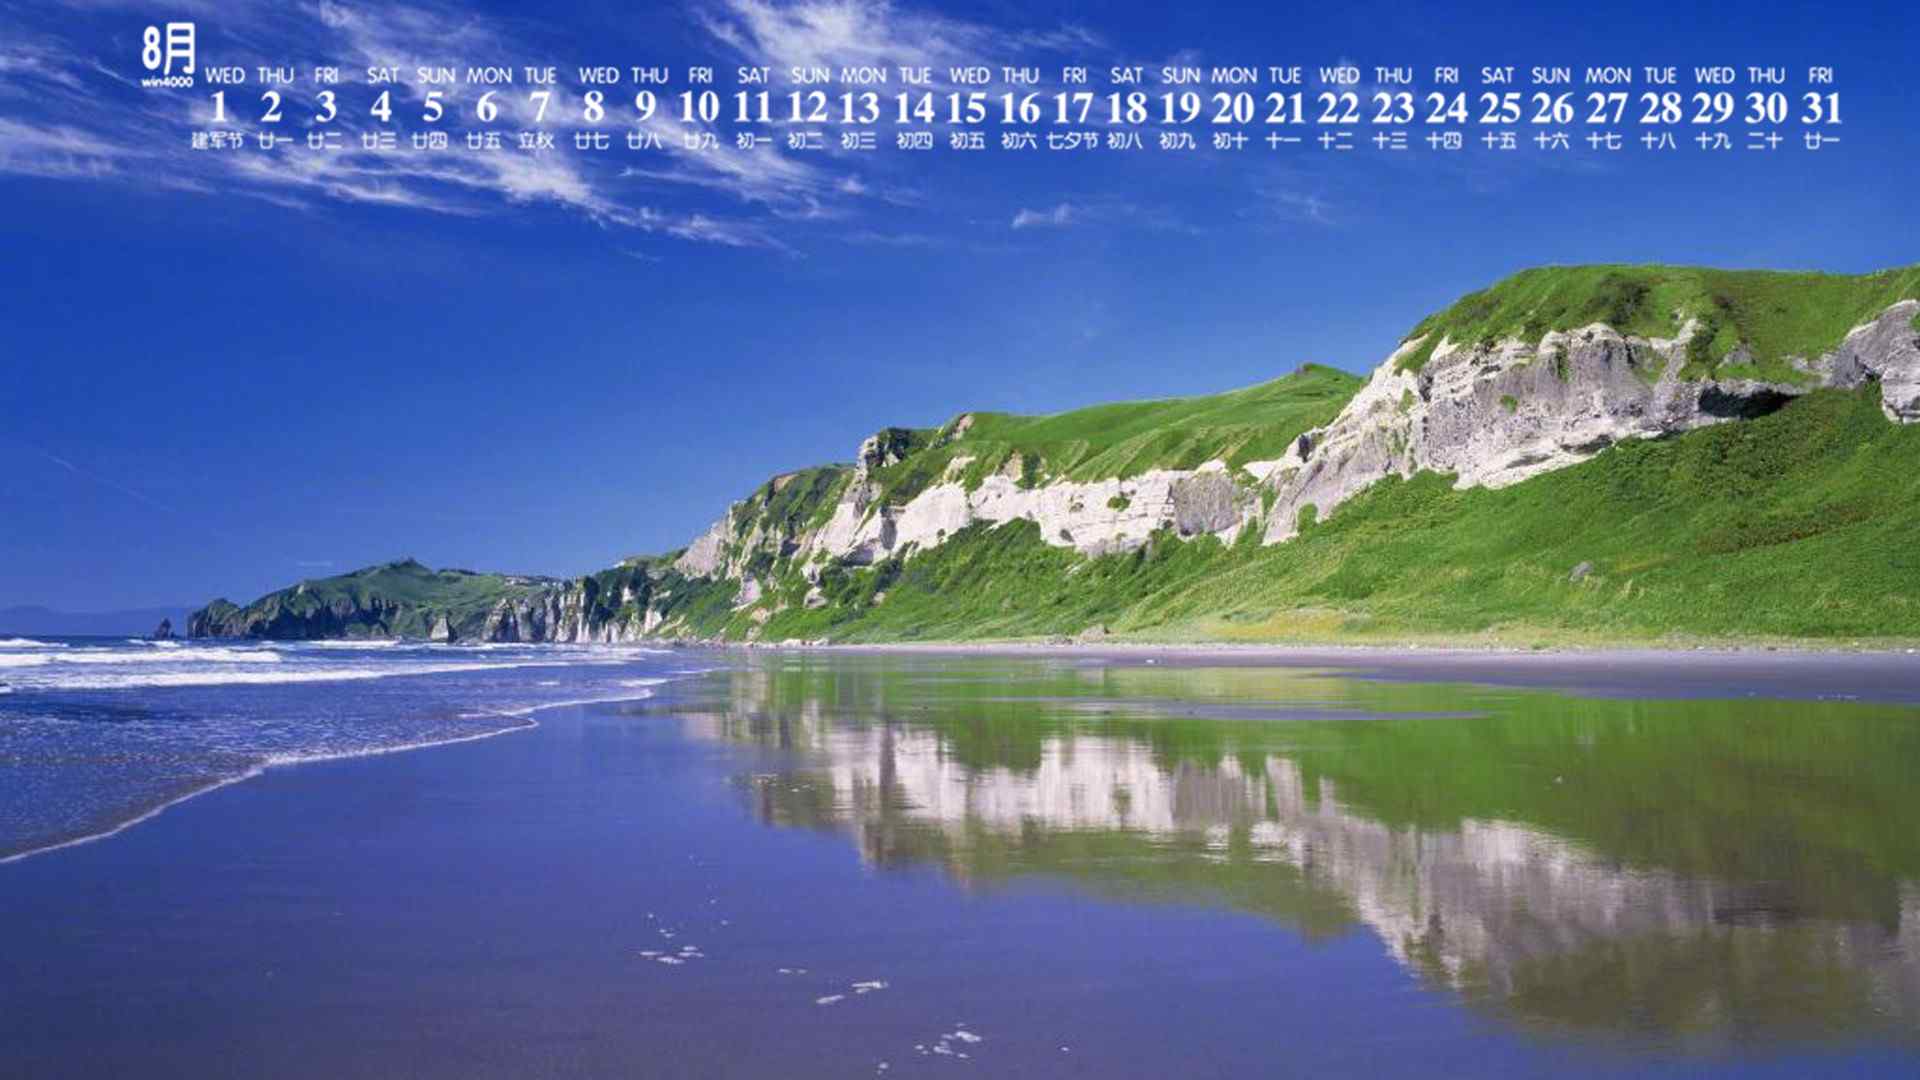 2018年8月日历壁纸海滩唯美风景壁纸